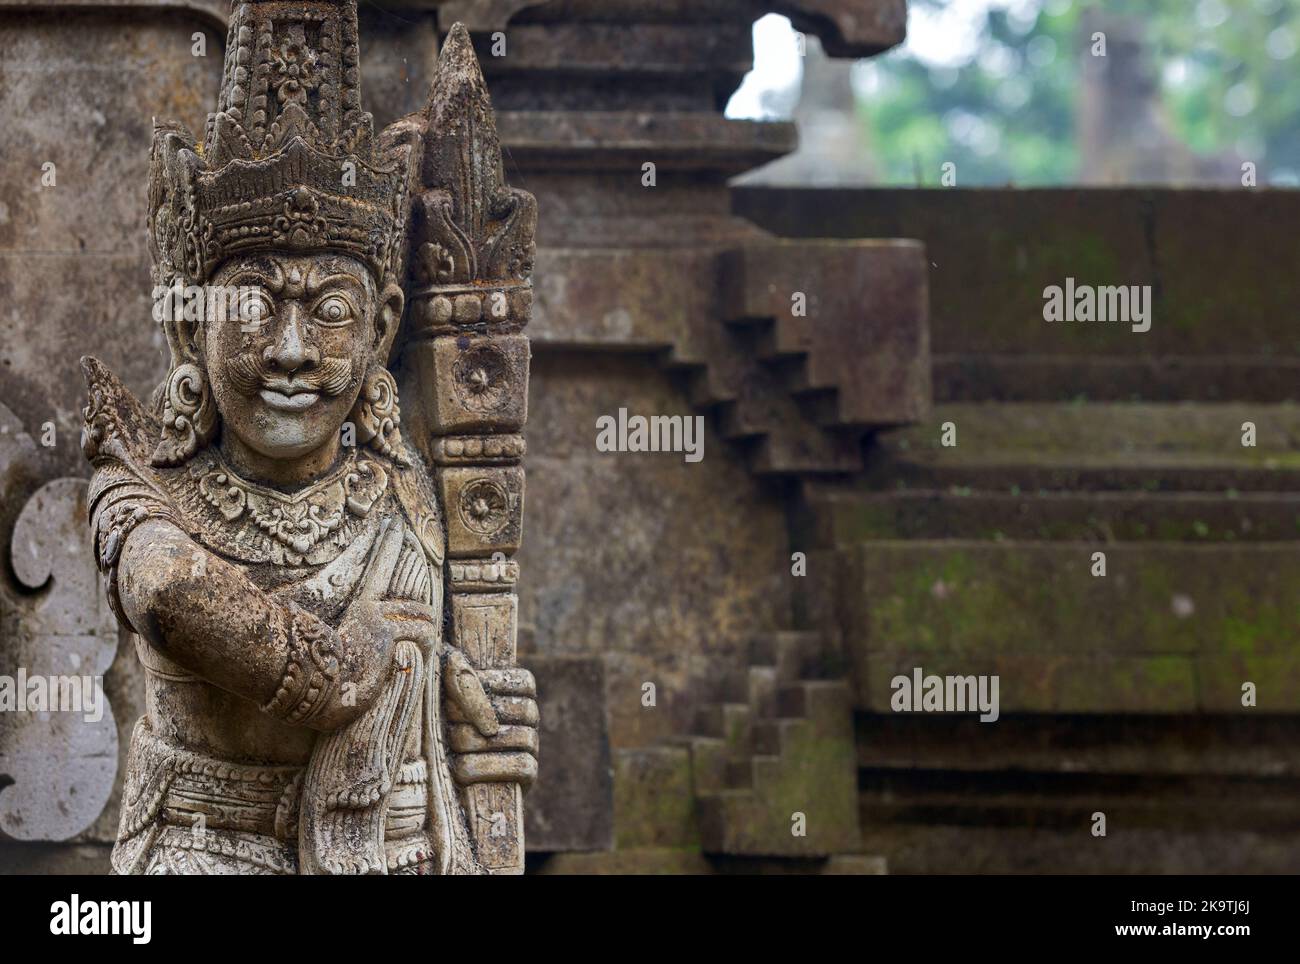 Traditionelle Dämonenwache Statue in Stein gemeißelt in Hindu-Tempel, Pura Tirta Empul, Bali, Indonesien Stockfoto